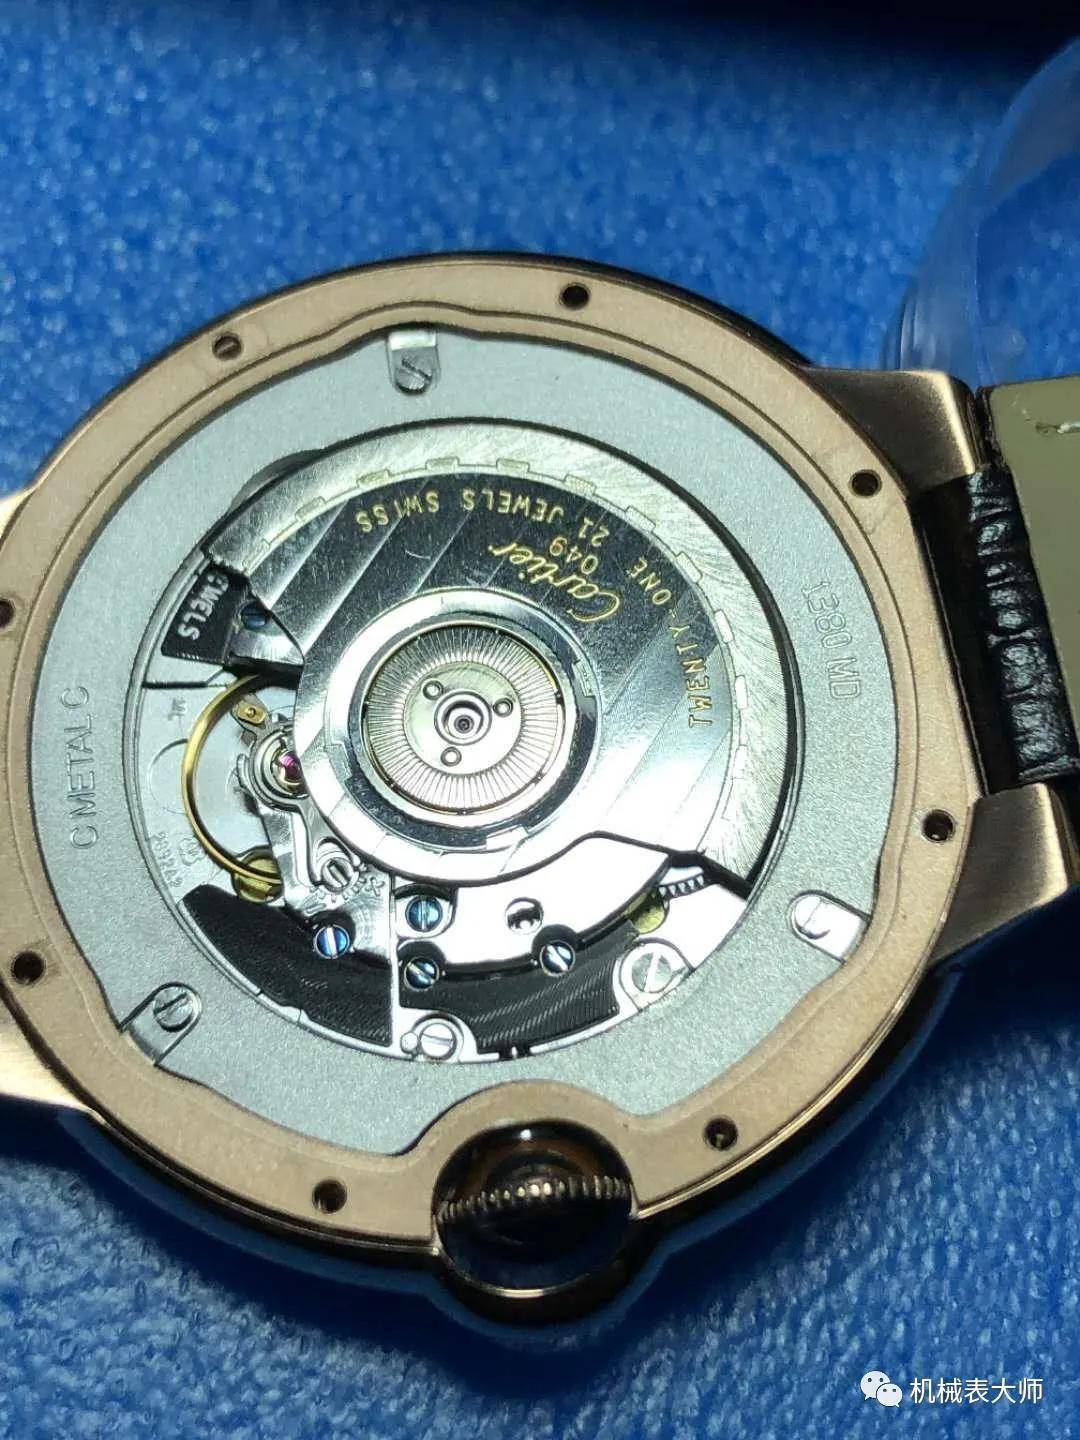 为什么国产手表就没有能够抗衡瑞士手表的品牌？